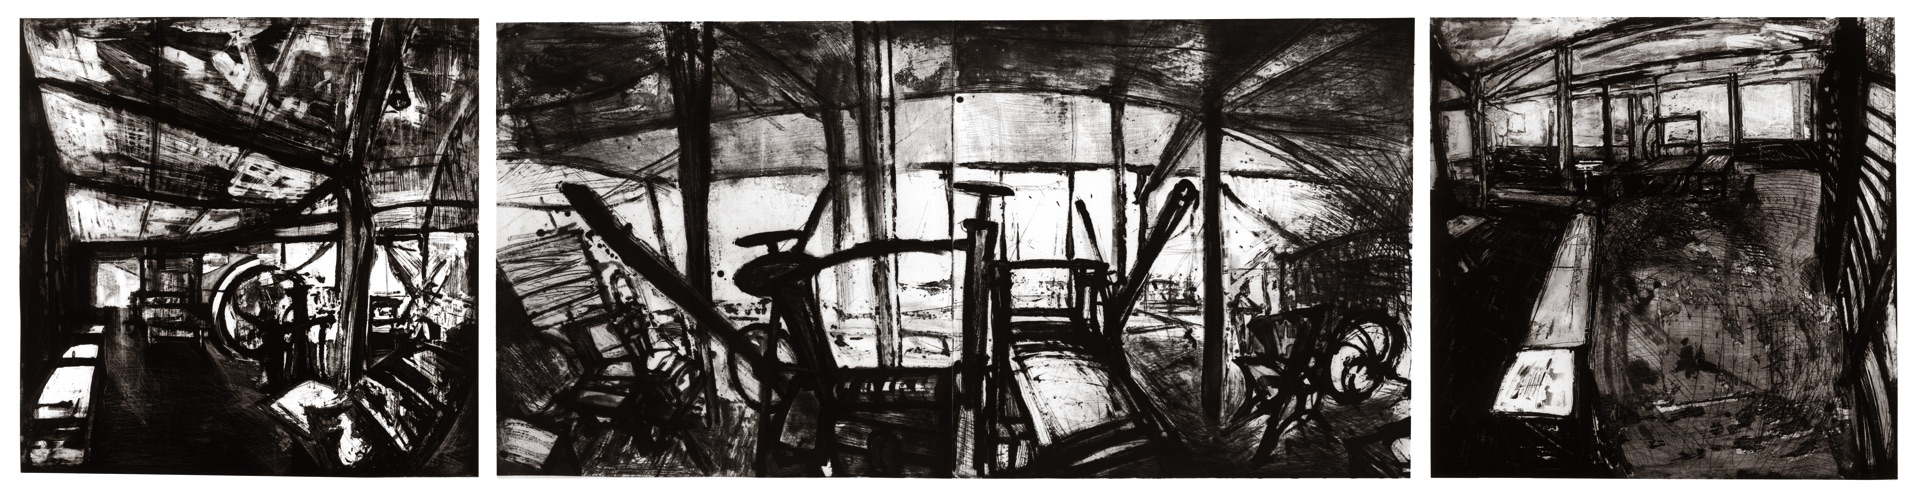 Atelier Lacourière et Frélaut II - Triptyque, 1985-1987, eau forte et pointe sèche,  100 x 400 cm en 4 plaques 